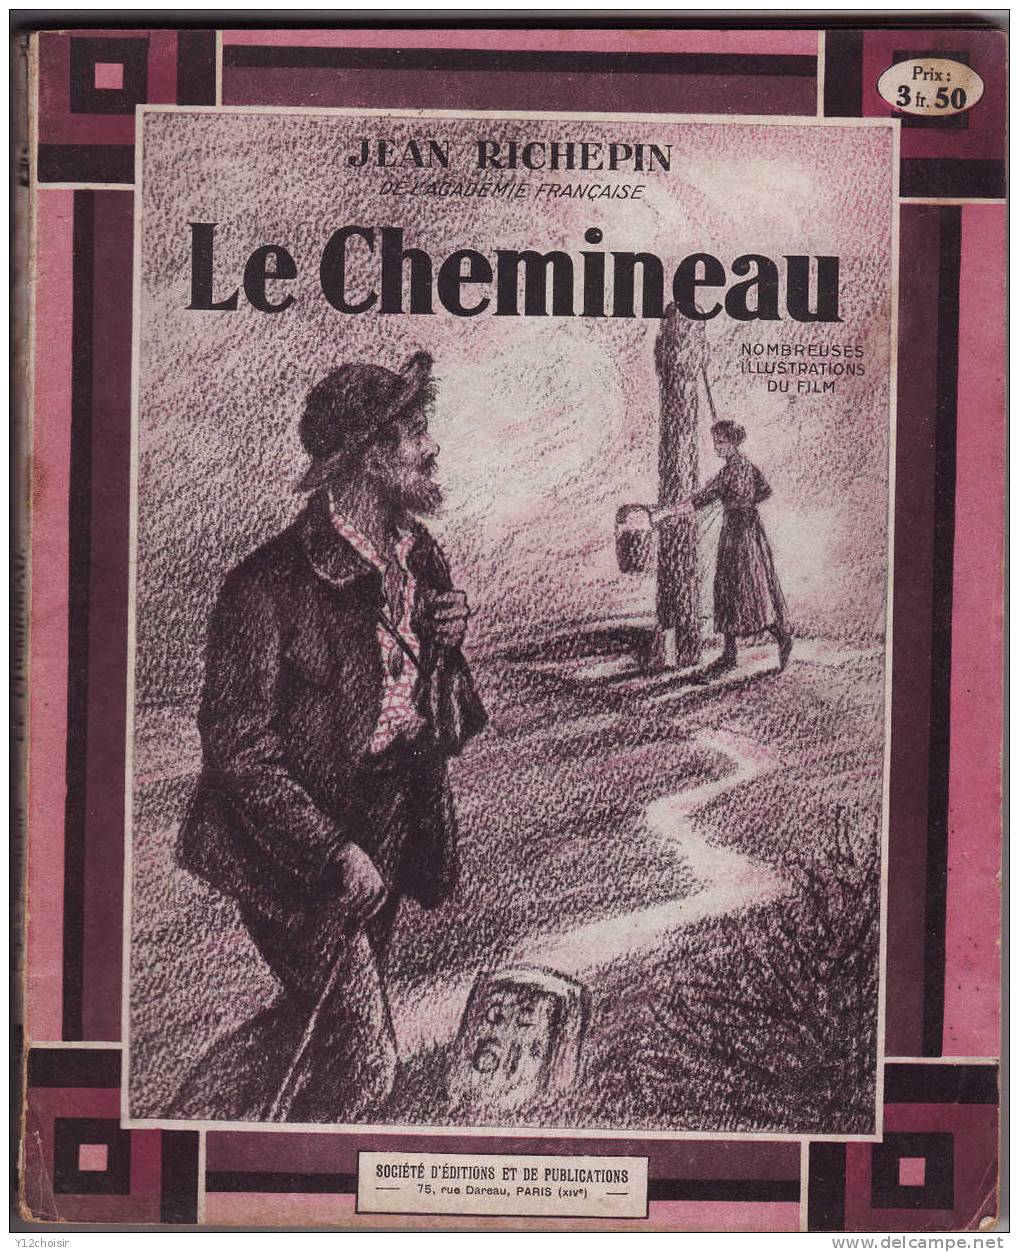 LE CHEMINEAU 1927 DE JEAN RICHEPIN ACADEMIE FRANCAISE NOMBREUSES ILLUSTRATIONS DU FILM 5 ACTES EN VERS THEATRE - Franse Schrijvers